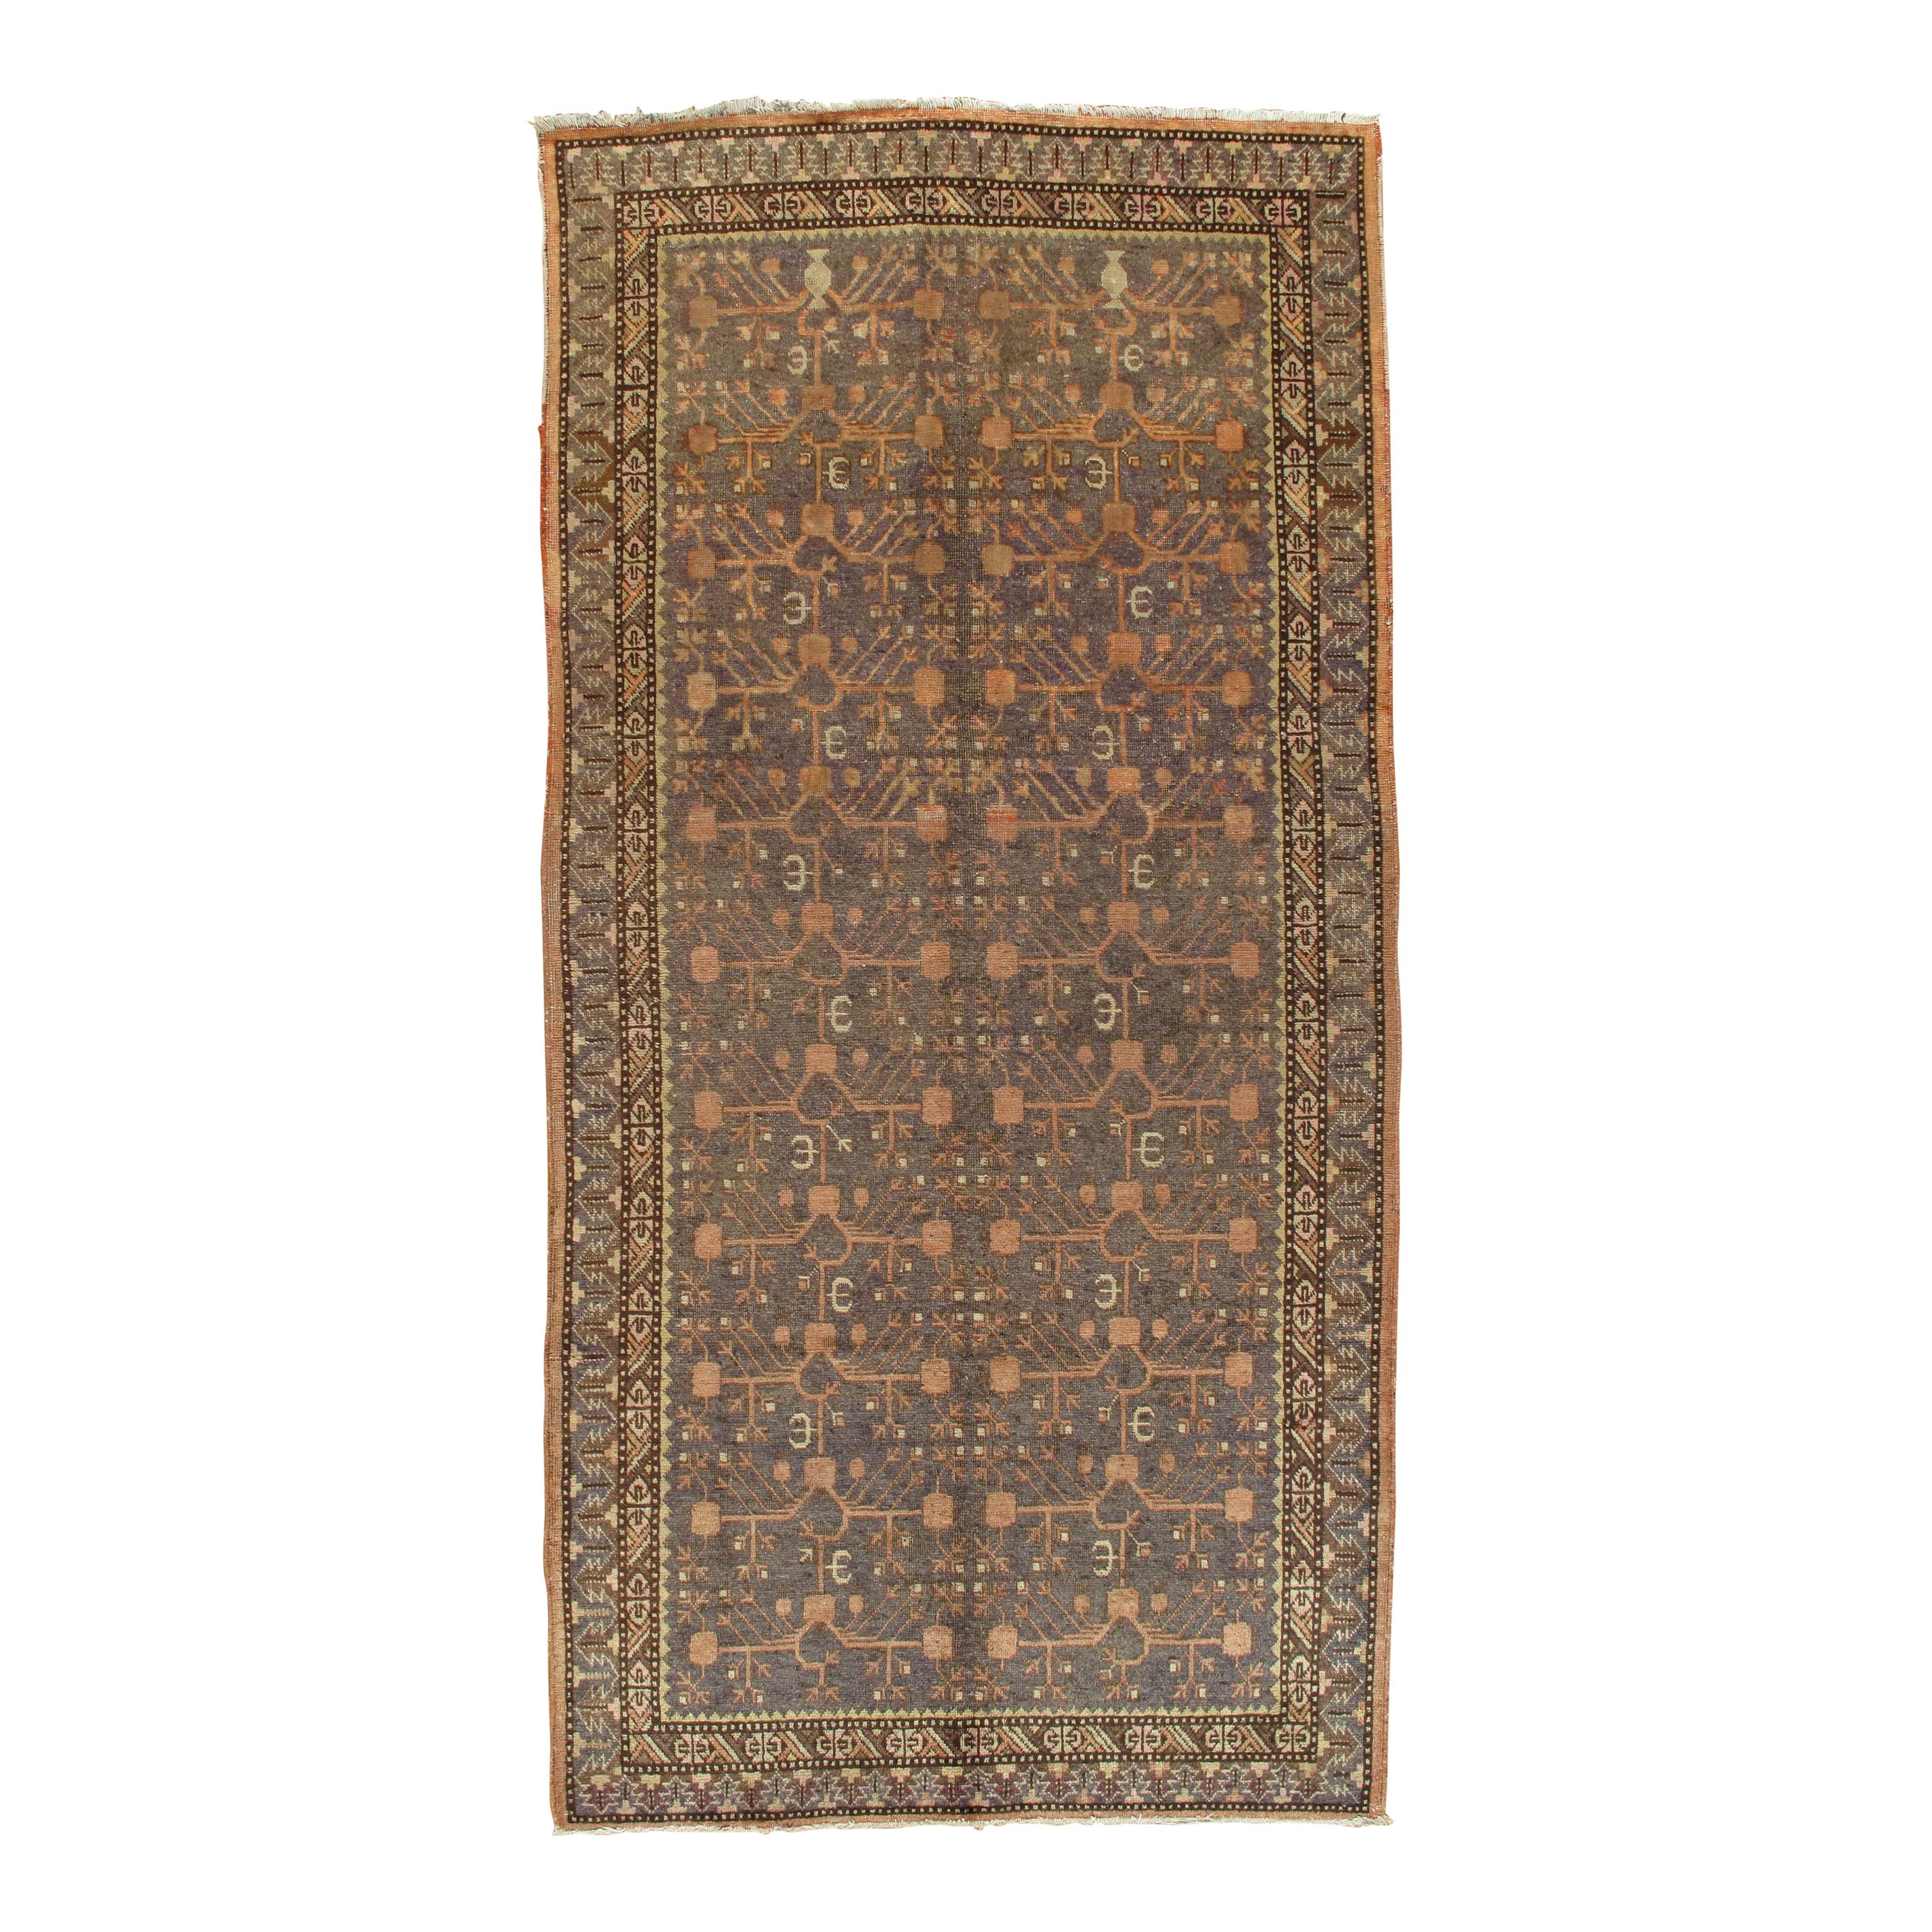 Vintage Khotan Rug, Handmade Oriental Rug, Soft shrimp, Beige, Brown, Char Gray For Sale